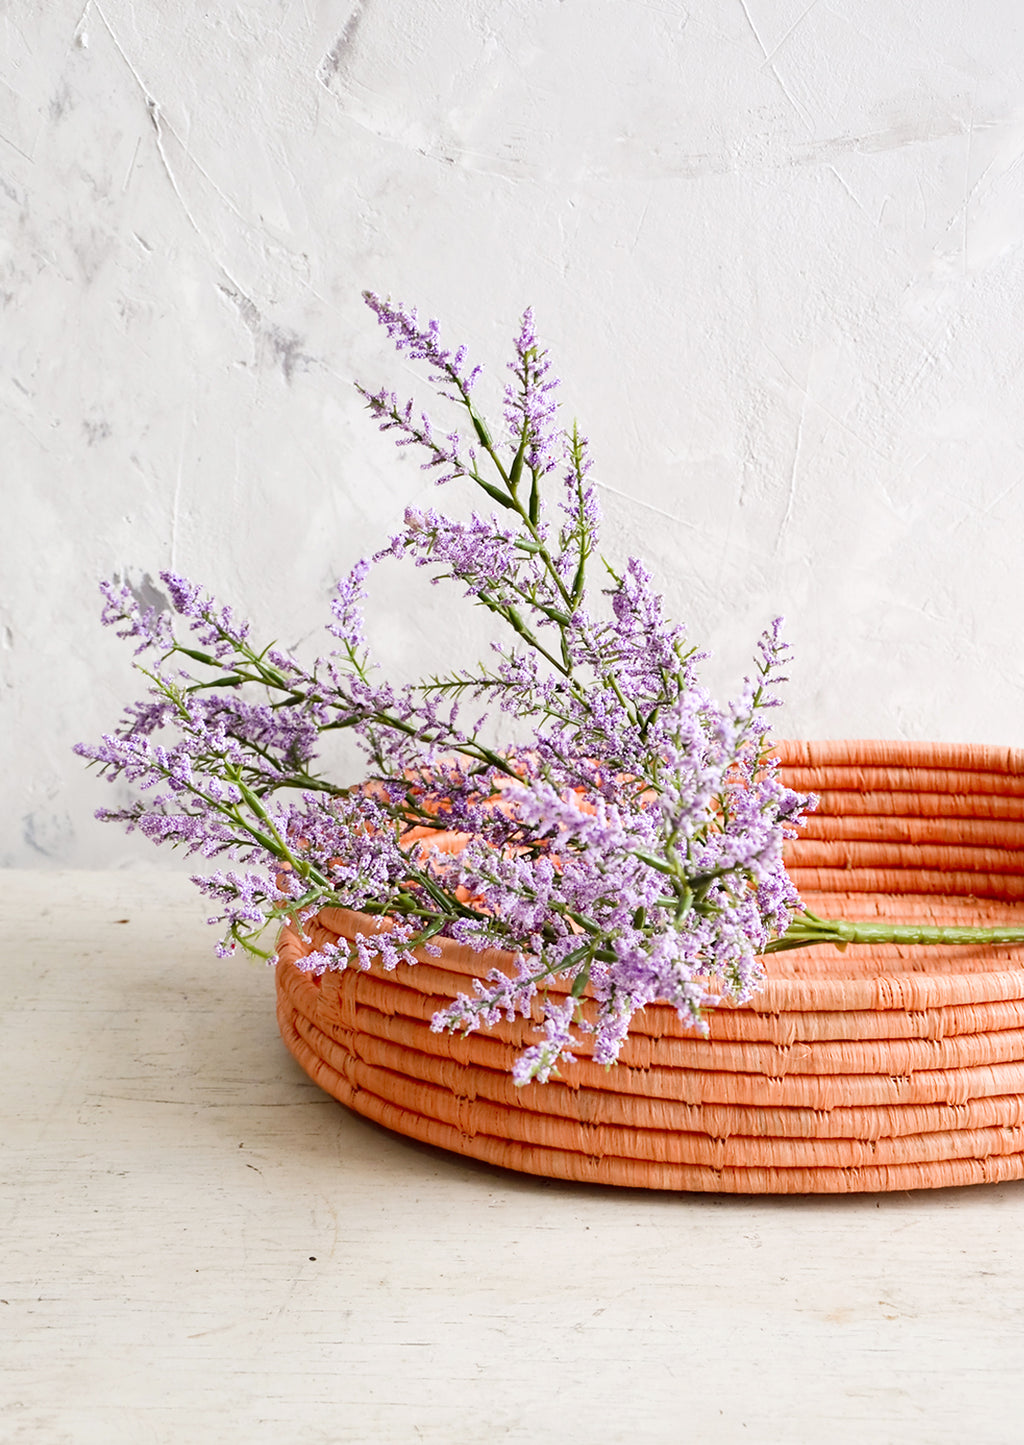 2: Woven raffia basket in peach color, housing purple flowers.